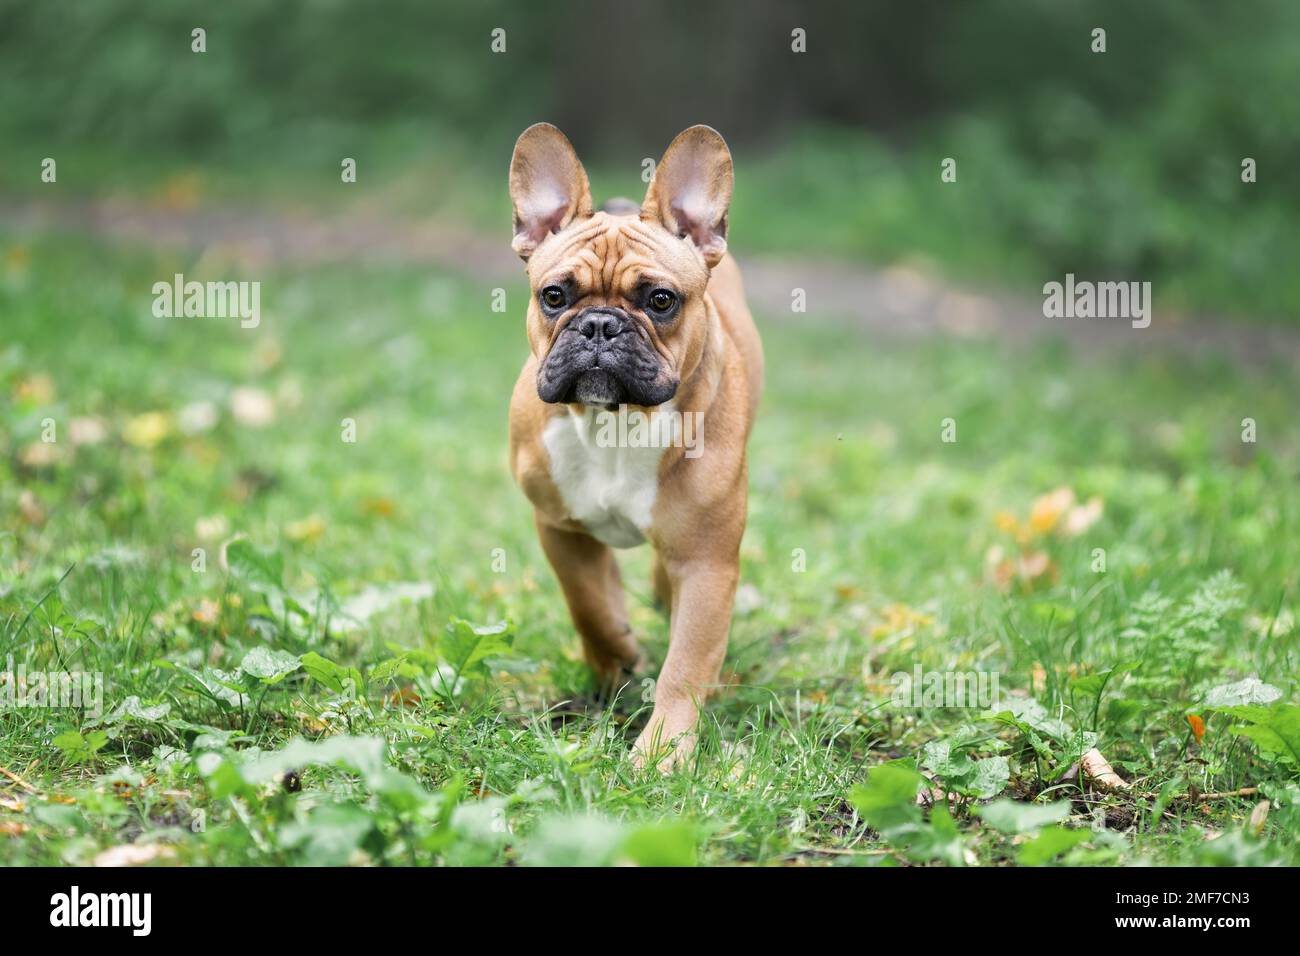 Giovane cane purebred di razza bulldog francese camminando in natura in erba verde Foto Stock